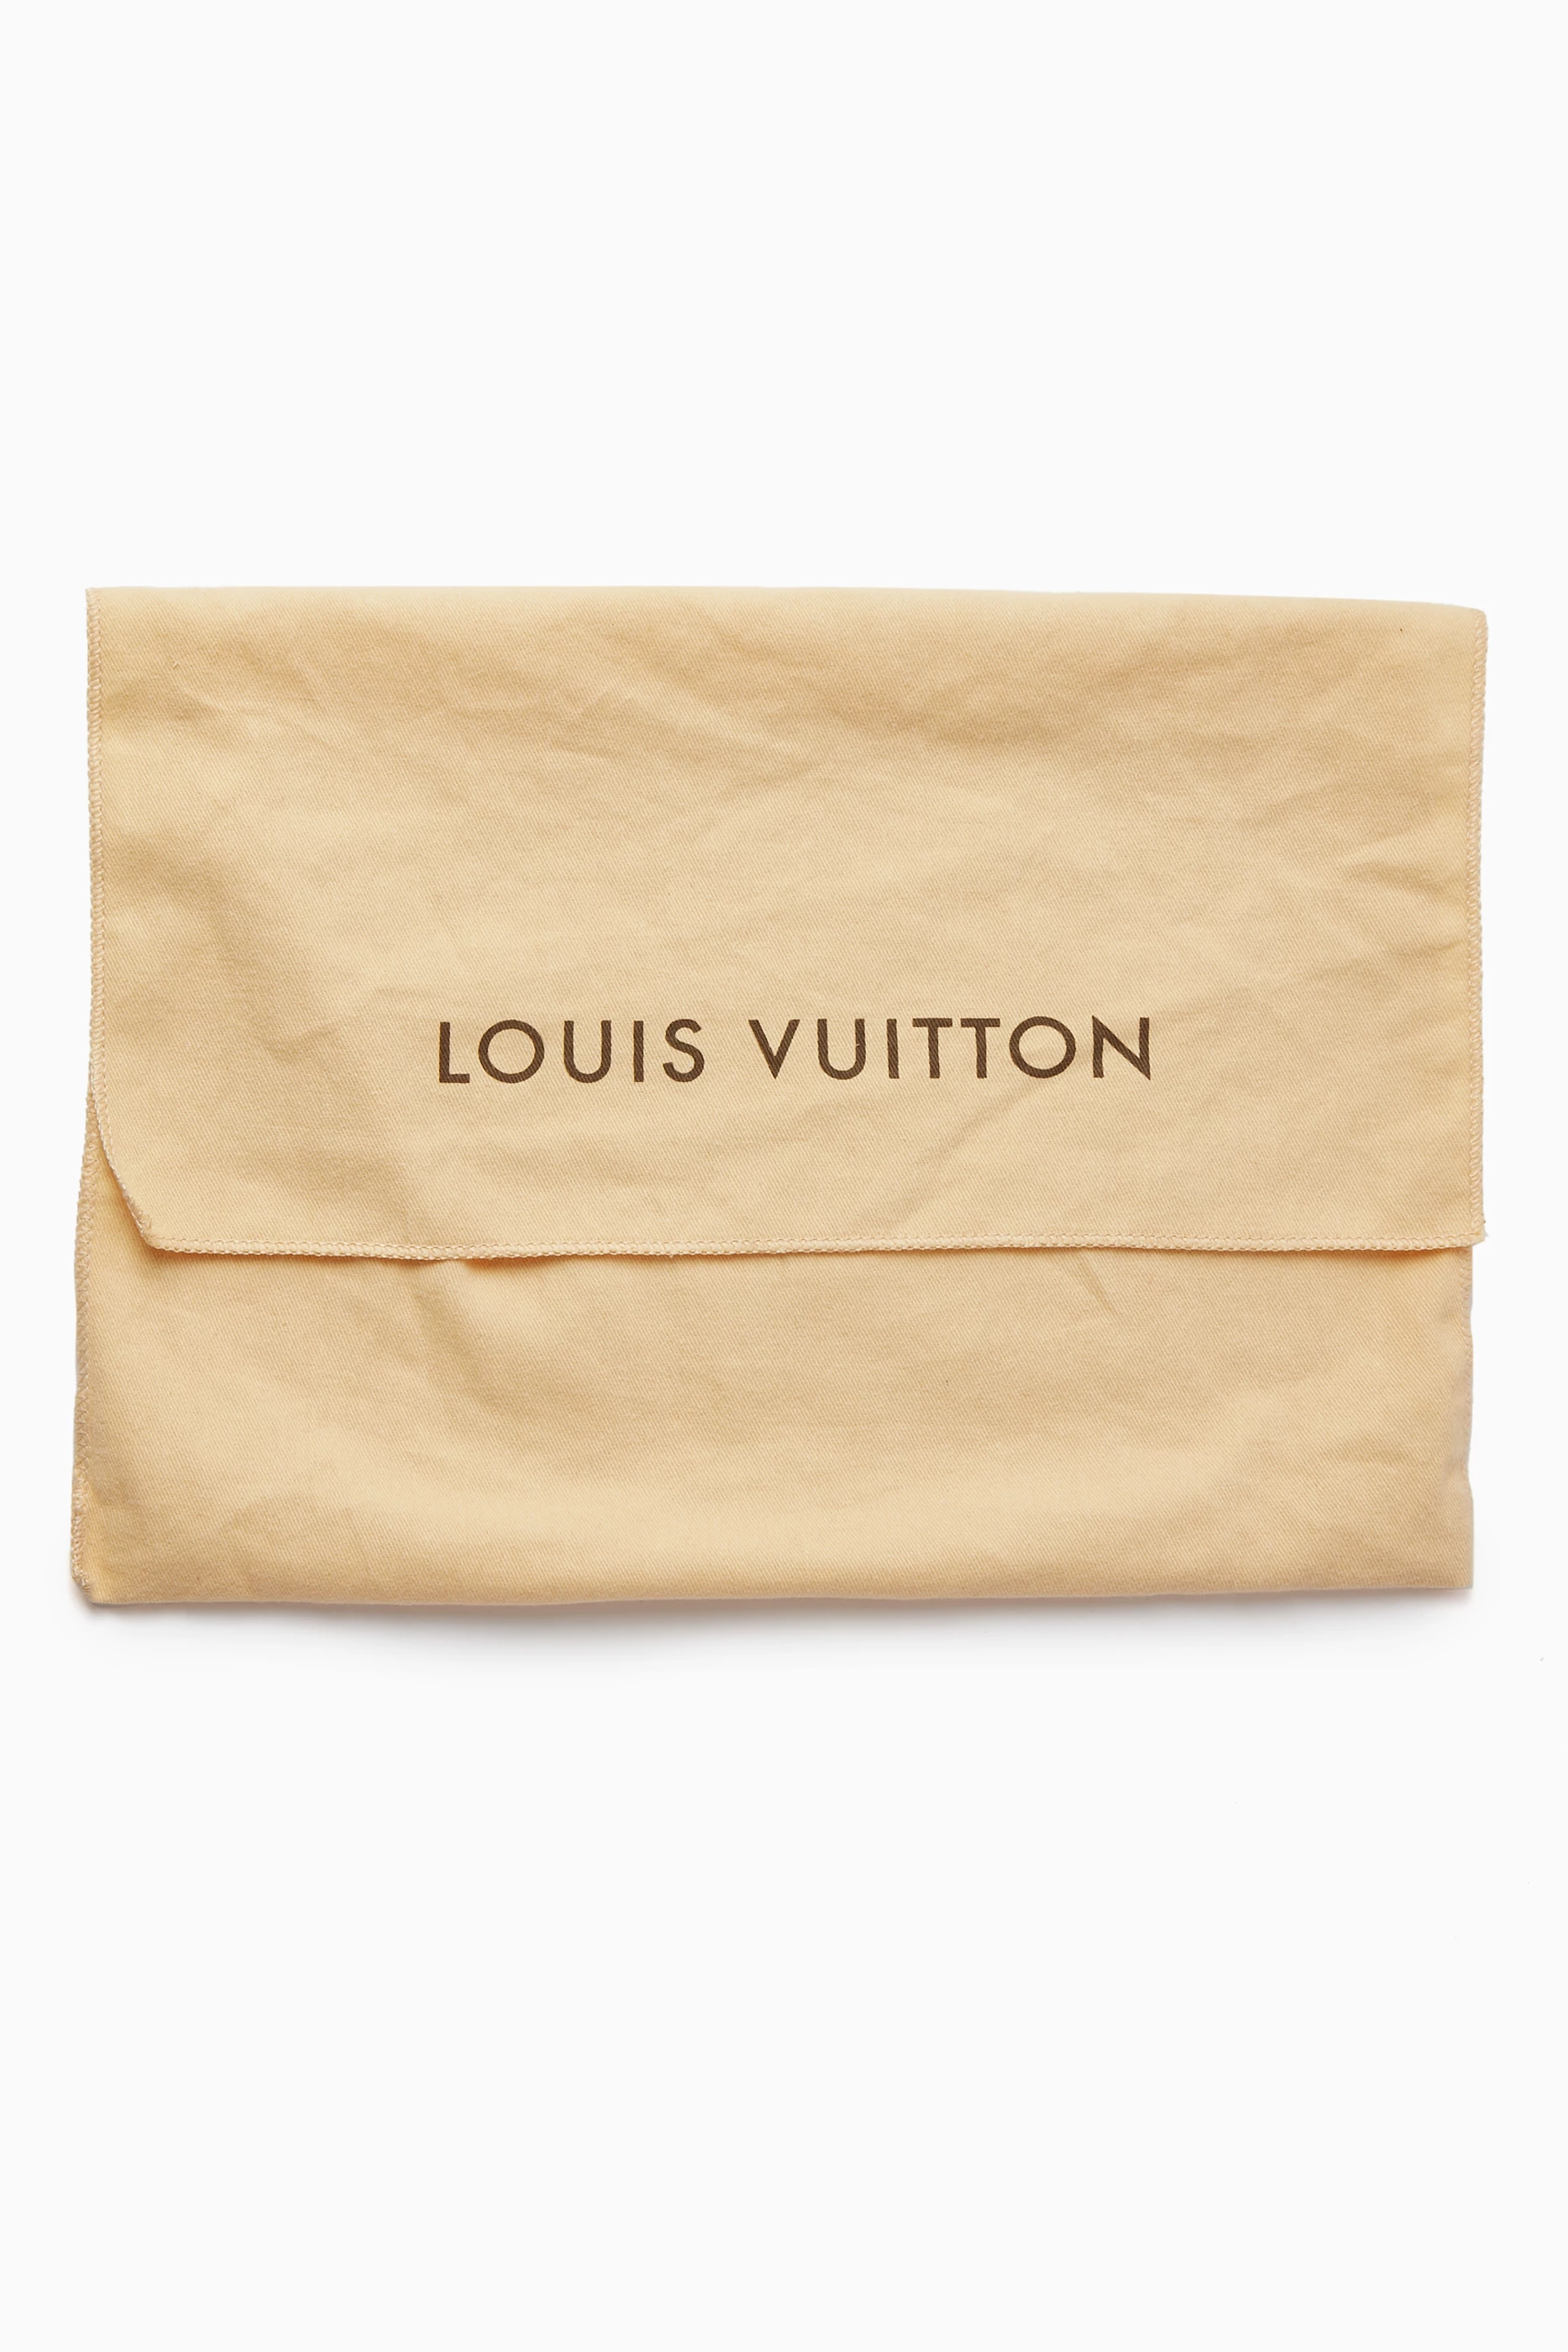 Louis Vuitton elogia el trabajo de Marc Jacobs en su próxima campaña